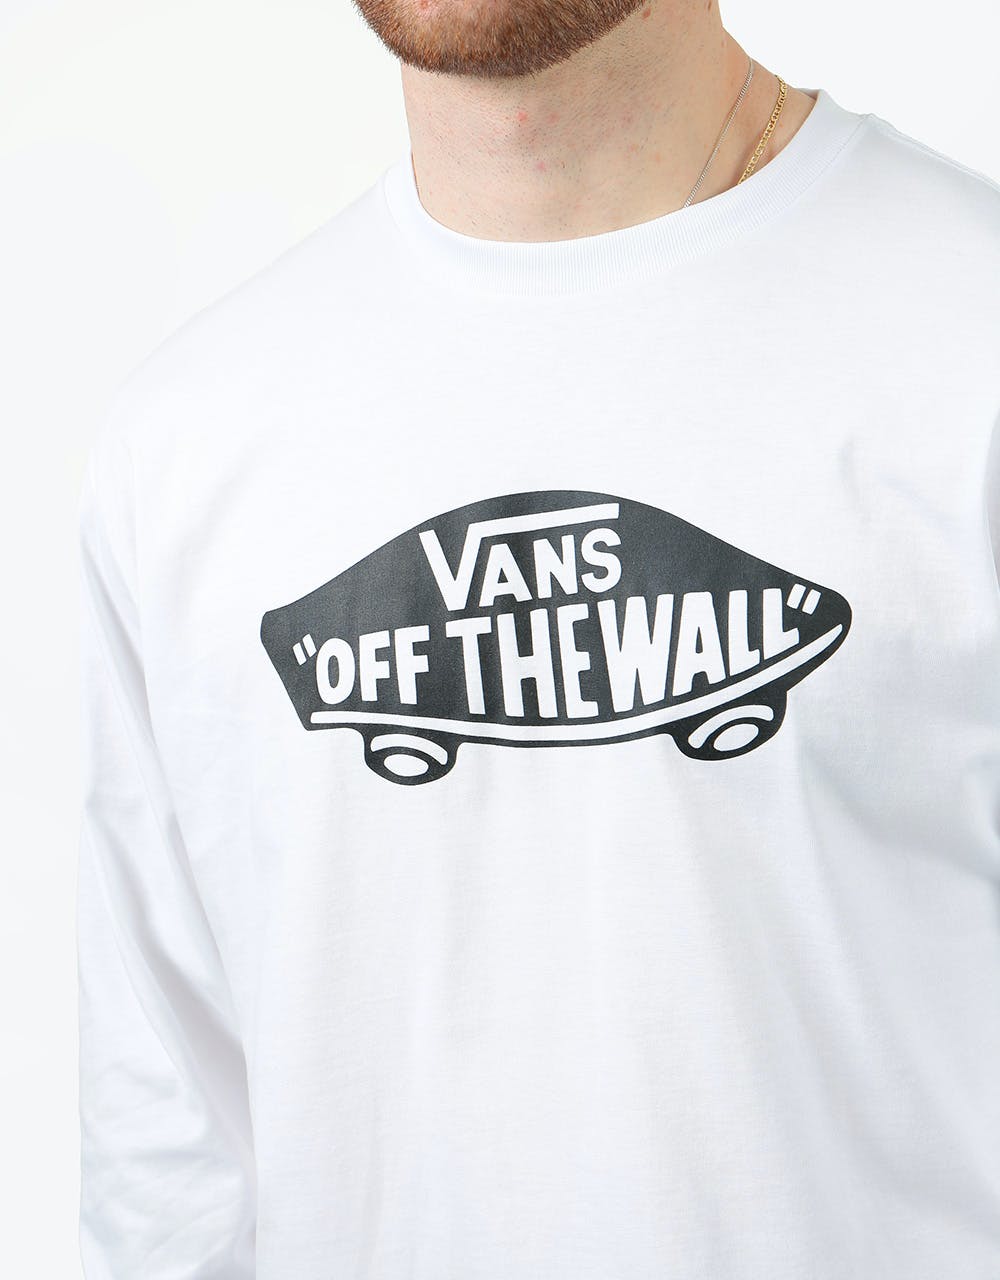 Vans OTW L/S T-Shirt - White/Black